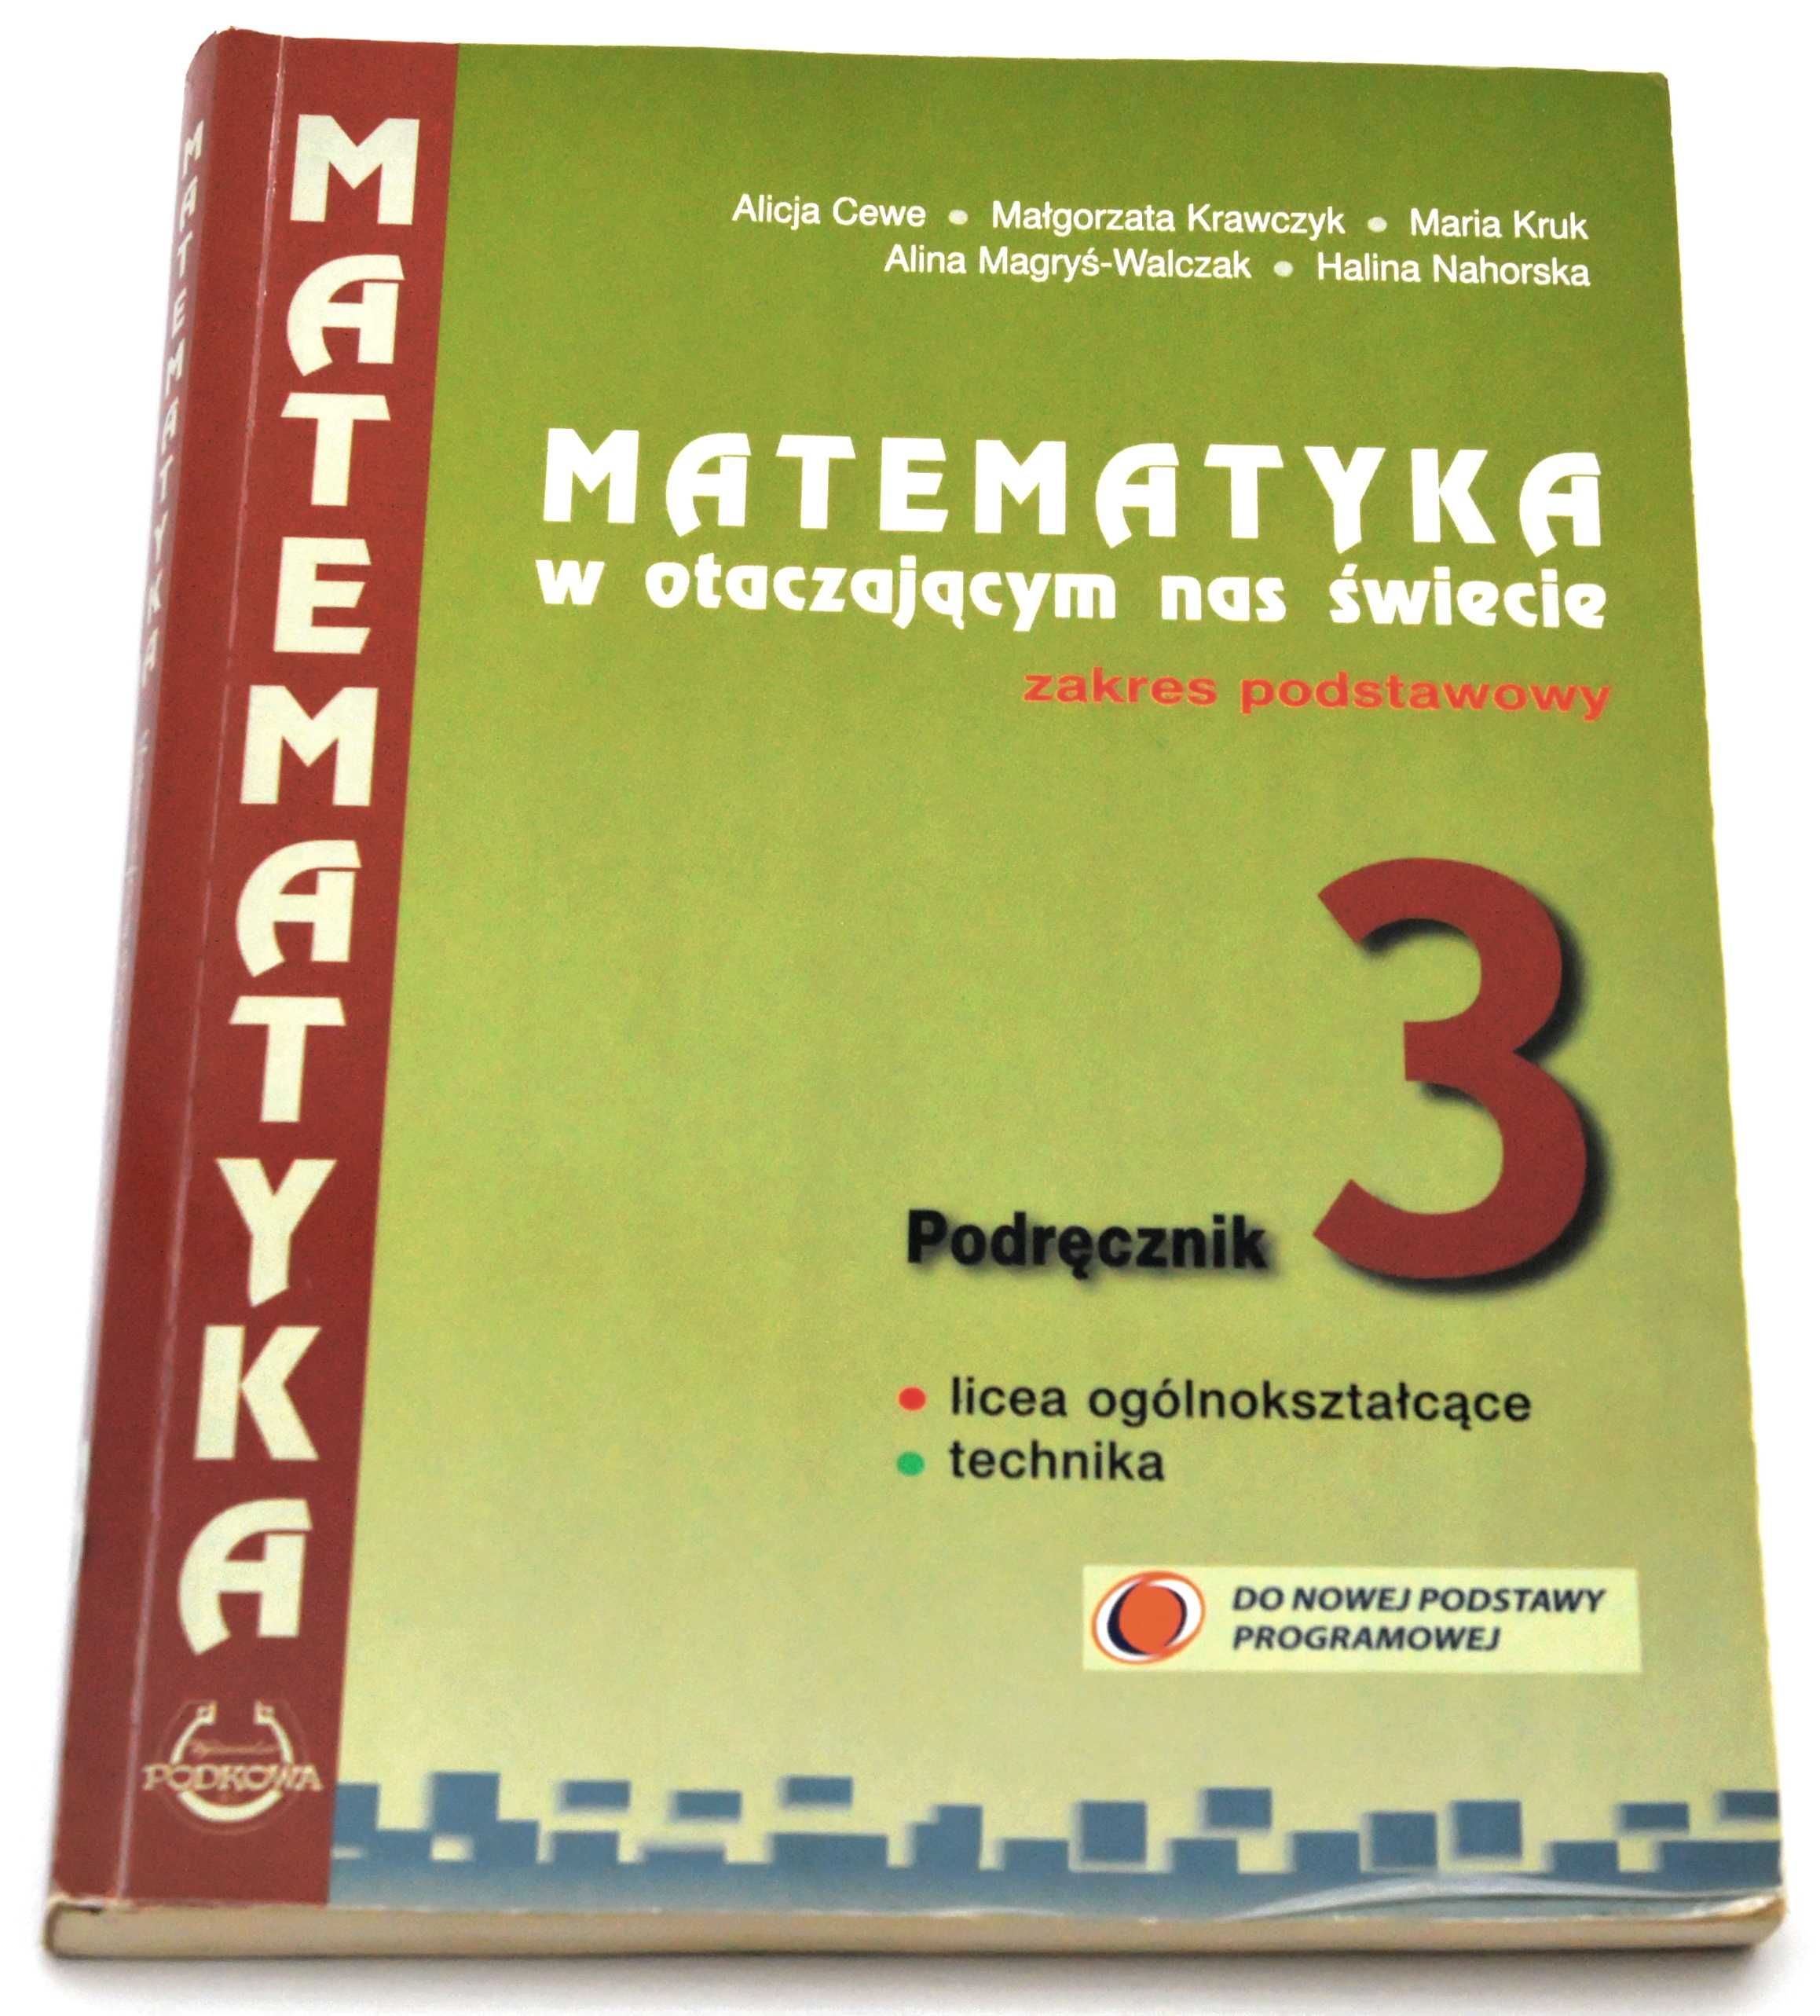 Matematyka w otaczającym nas świecie 3 Podręcznik Z podstawowy